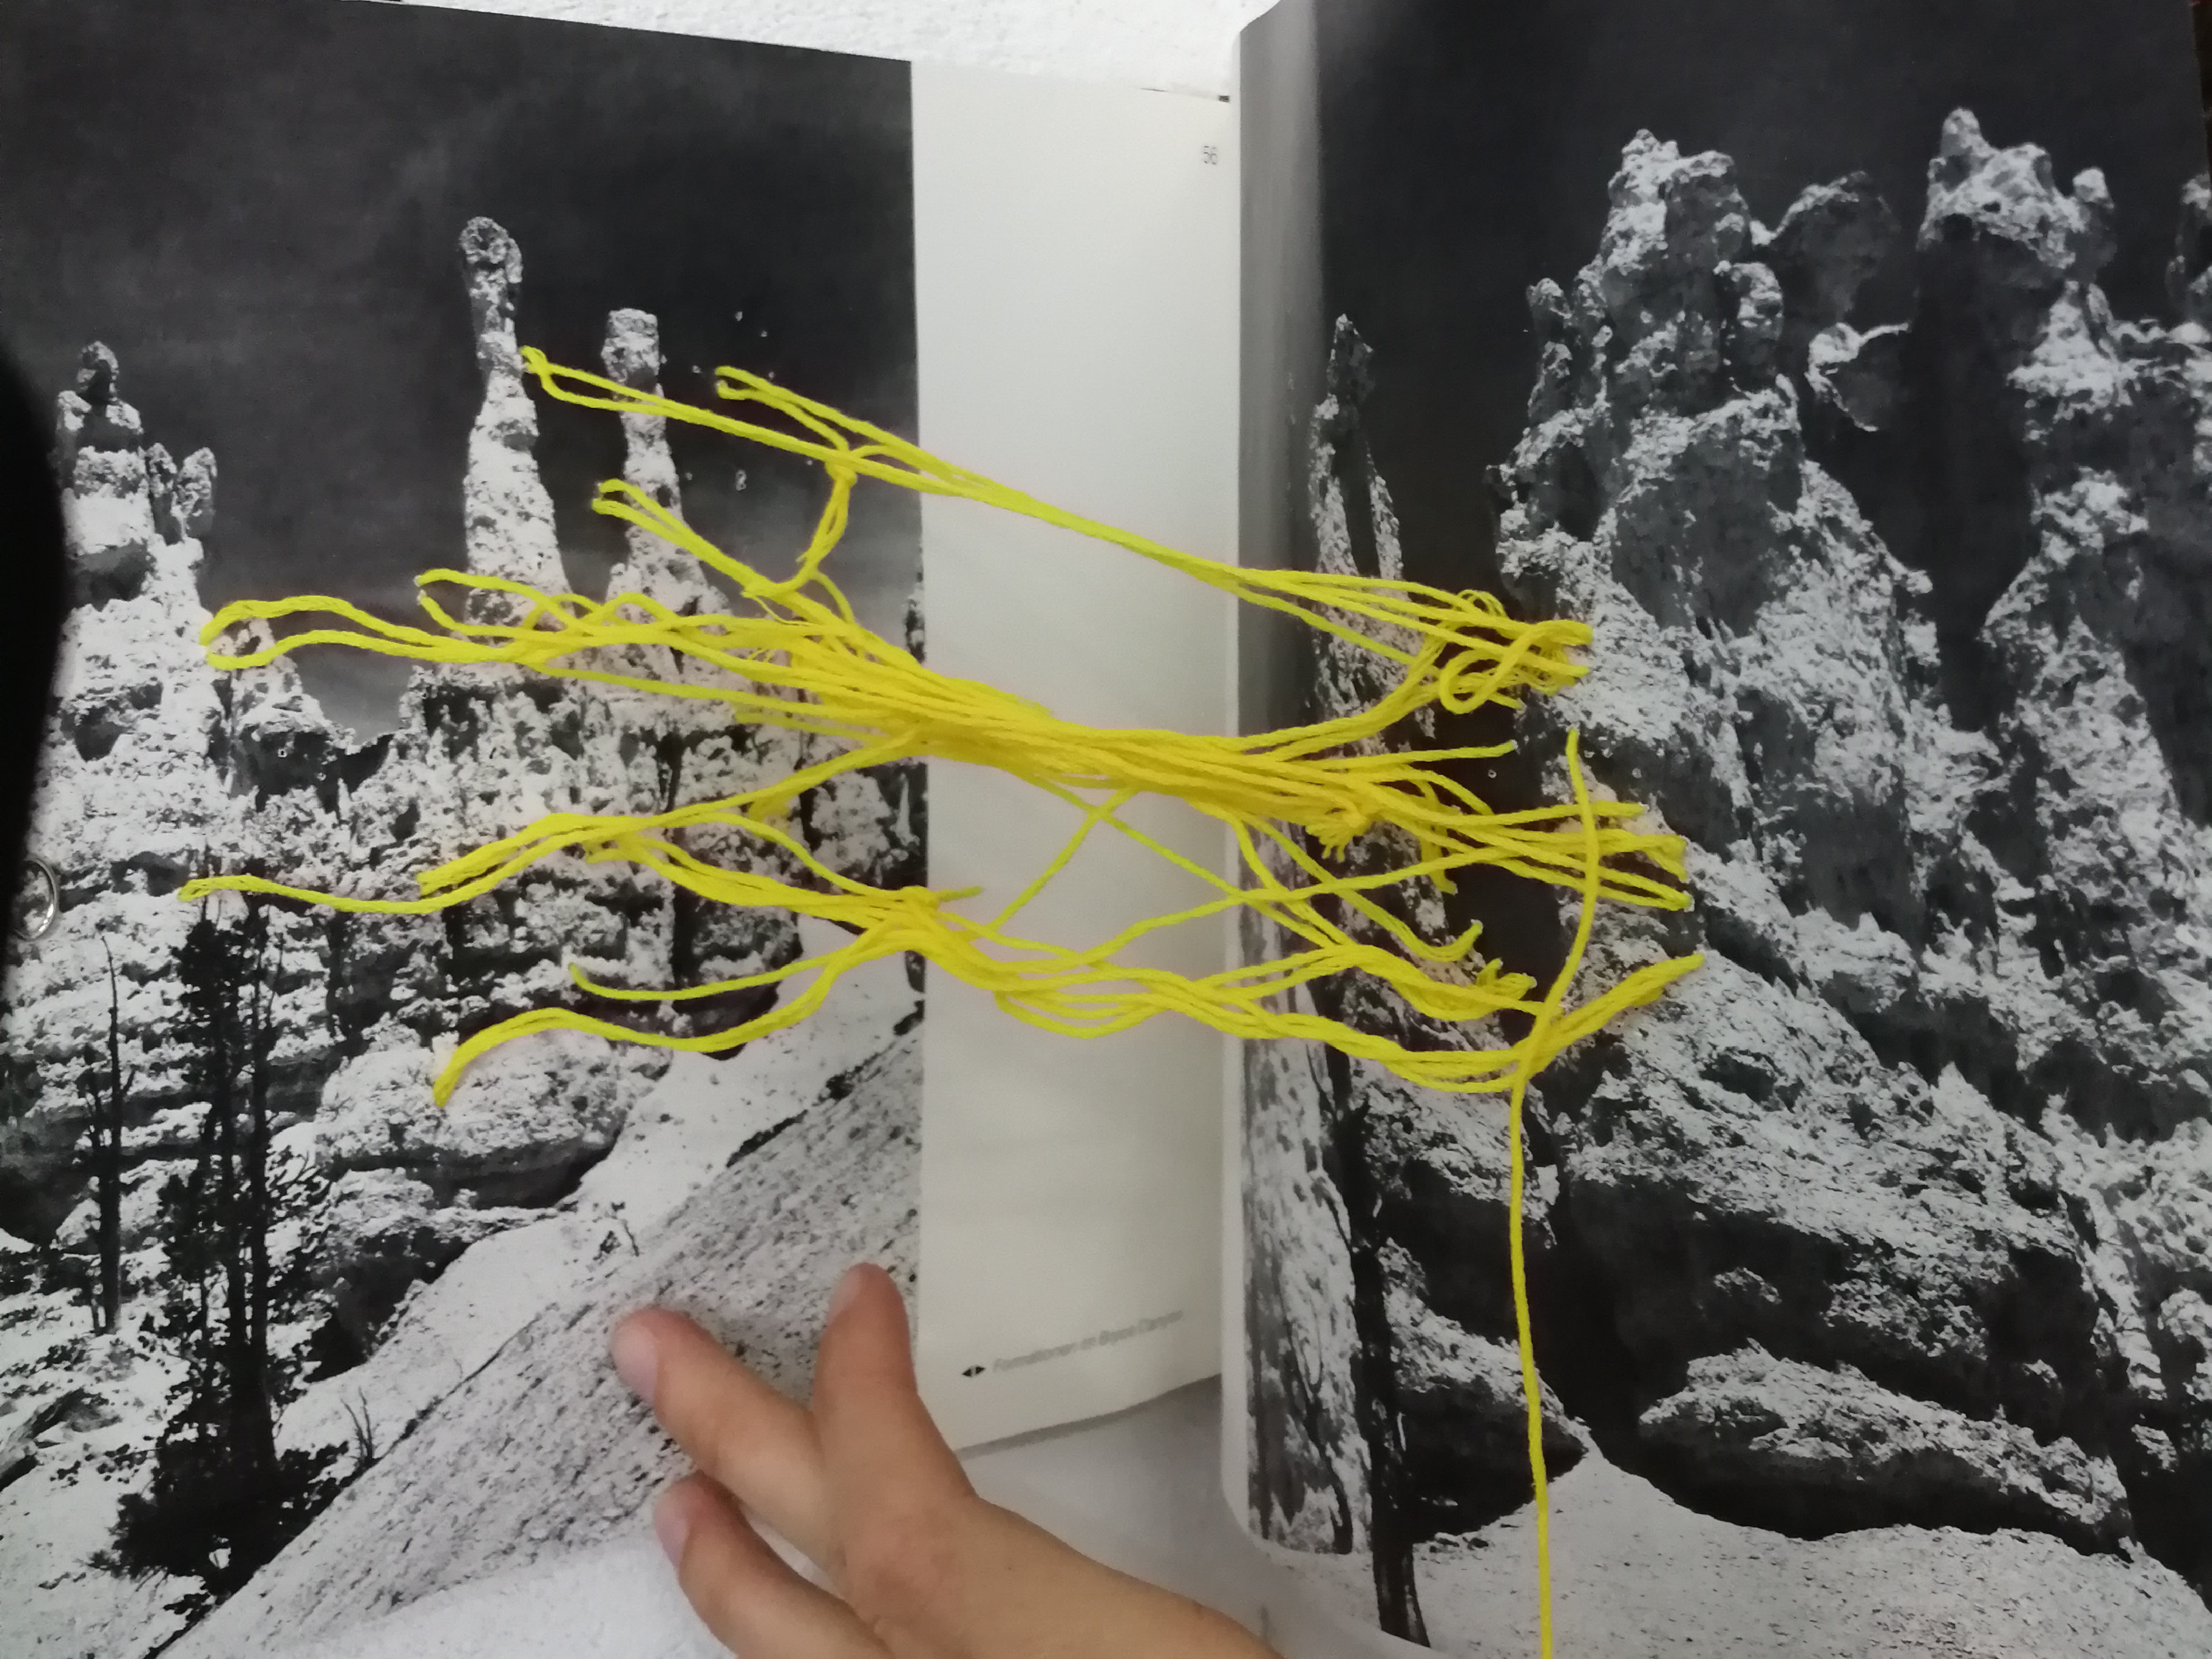 Die sich gegenüberliegenden Seiten eines Buchs sind mit gelber Schnur an verschiedenen Punkten fixiert und miteinander verbunden. Die Seiten sind mit schwarz-weiß Fotos von Gesteinsformationen bedruckt.